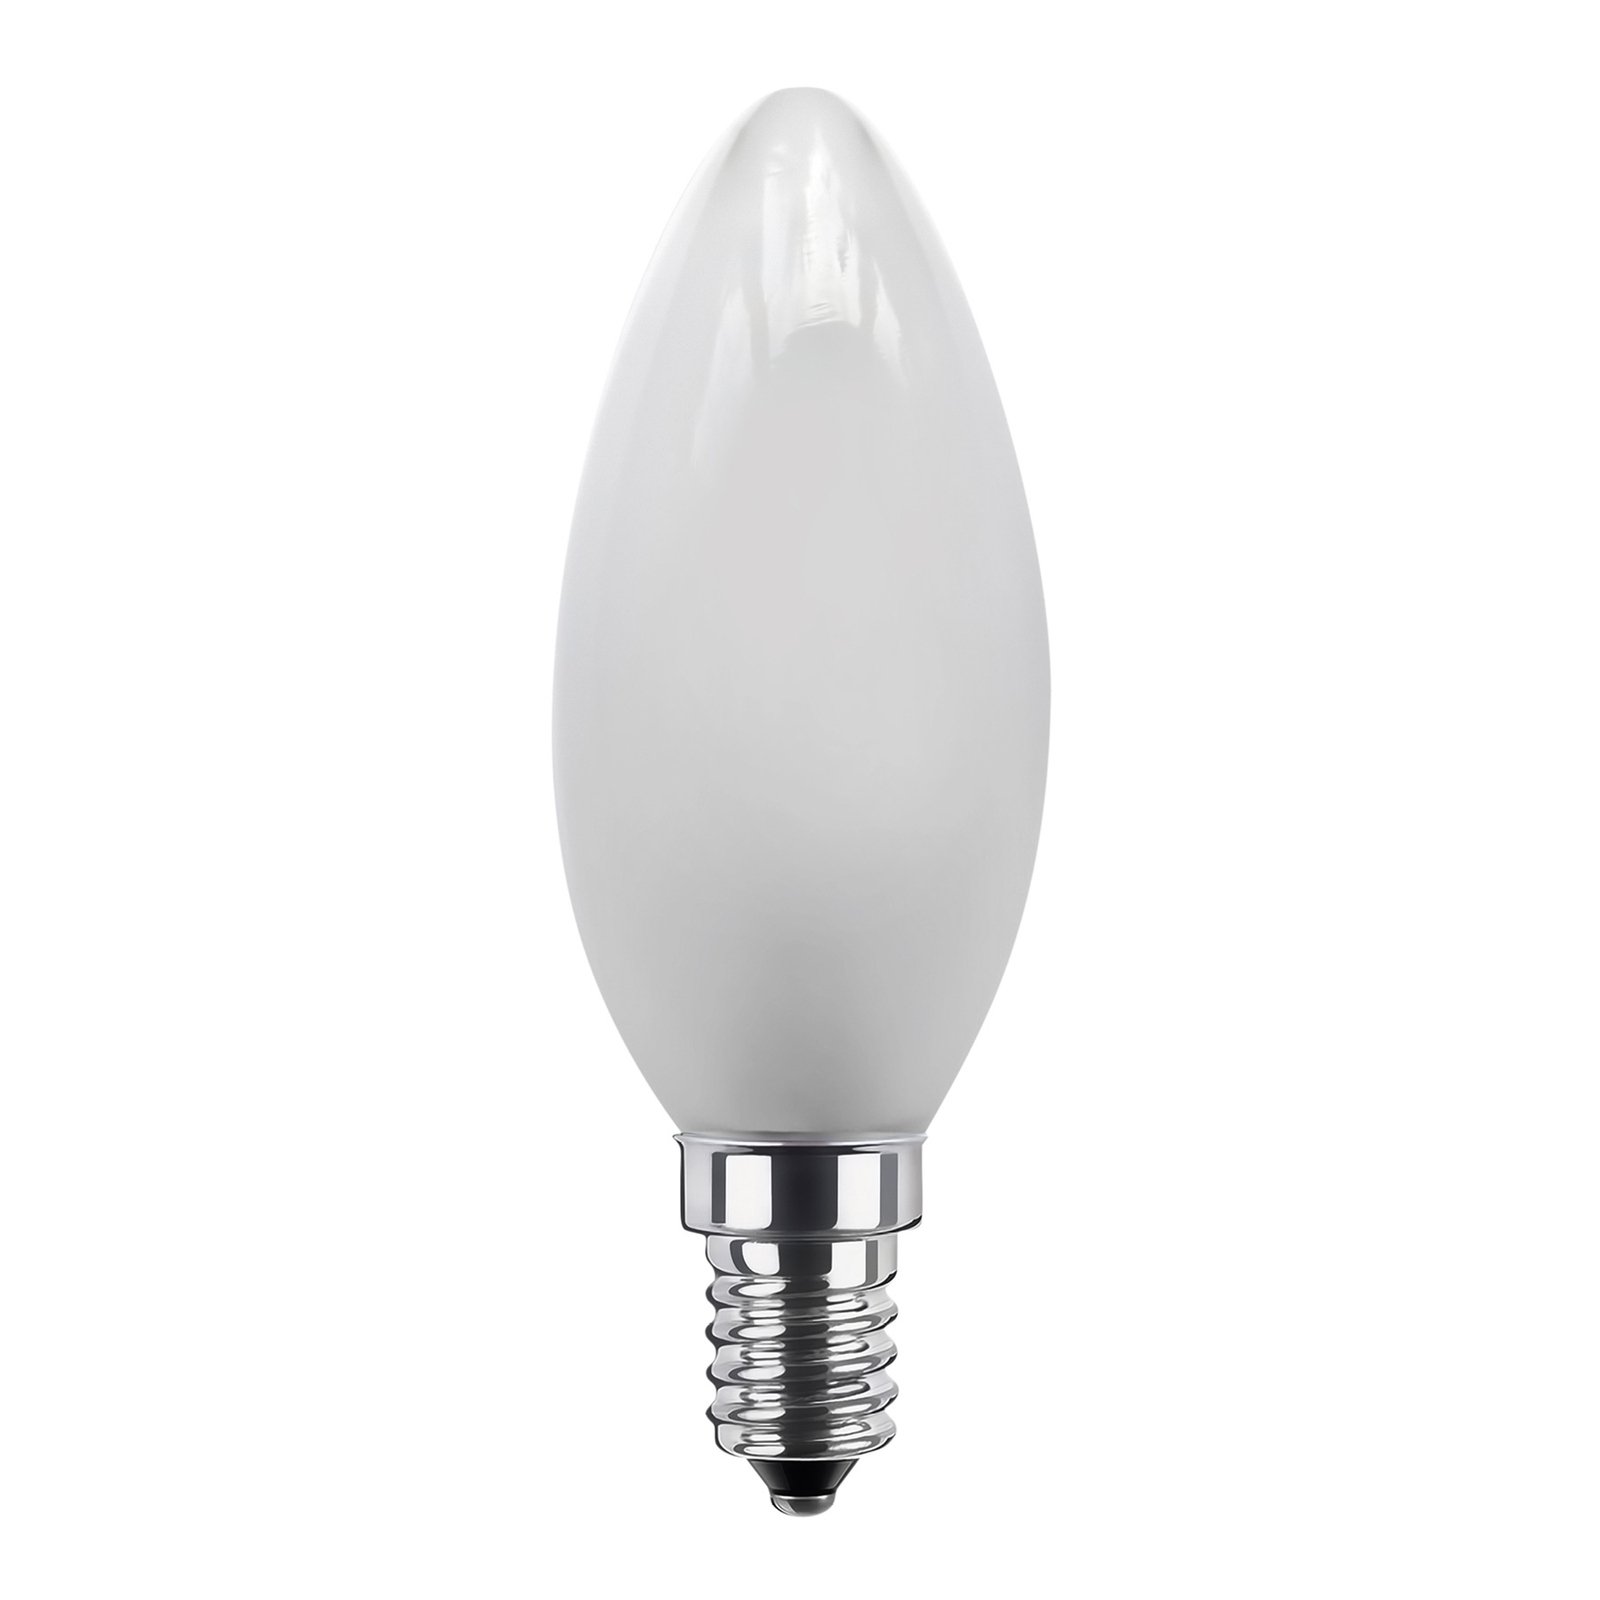 Segula lâmpada LED para vela E27 24V 3W 927 ambiente mate